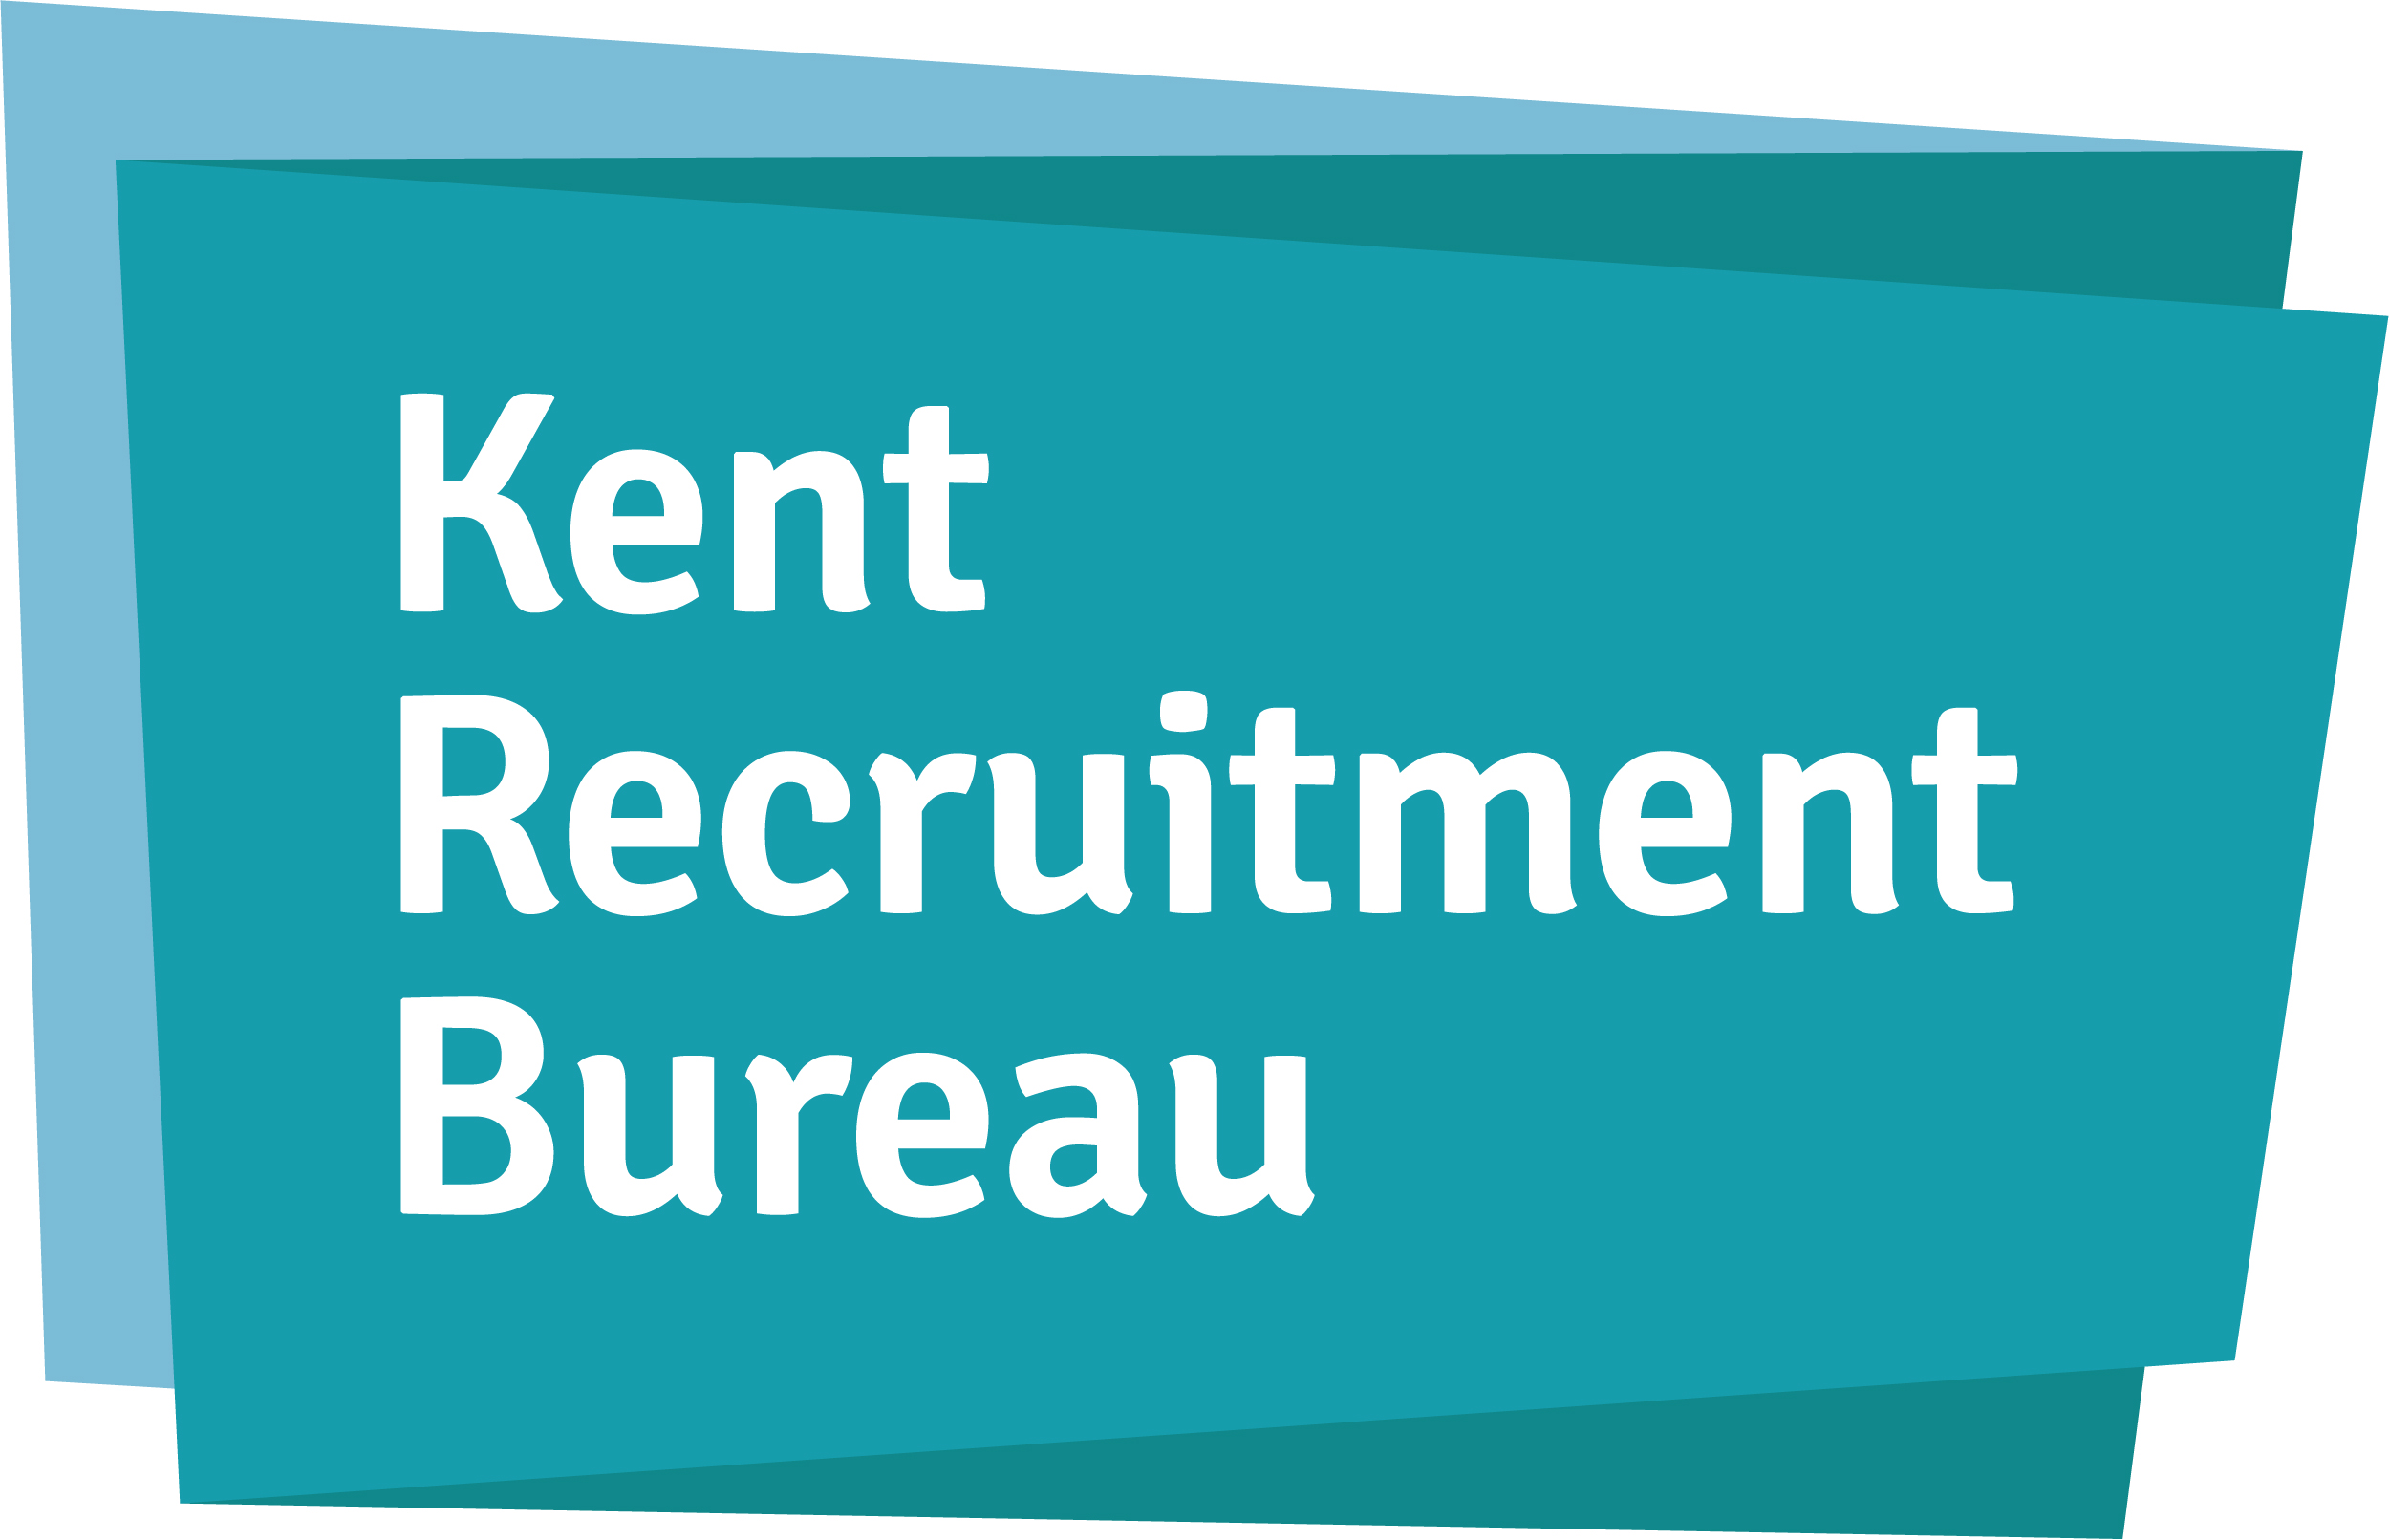 Kent Recruitment Bureau Ltd